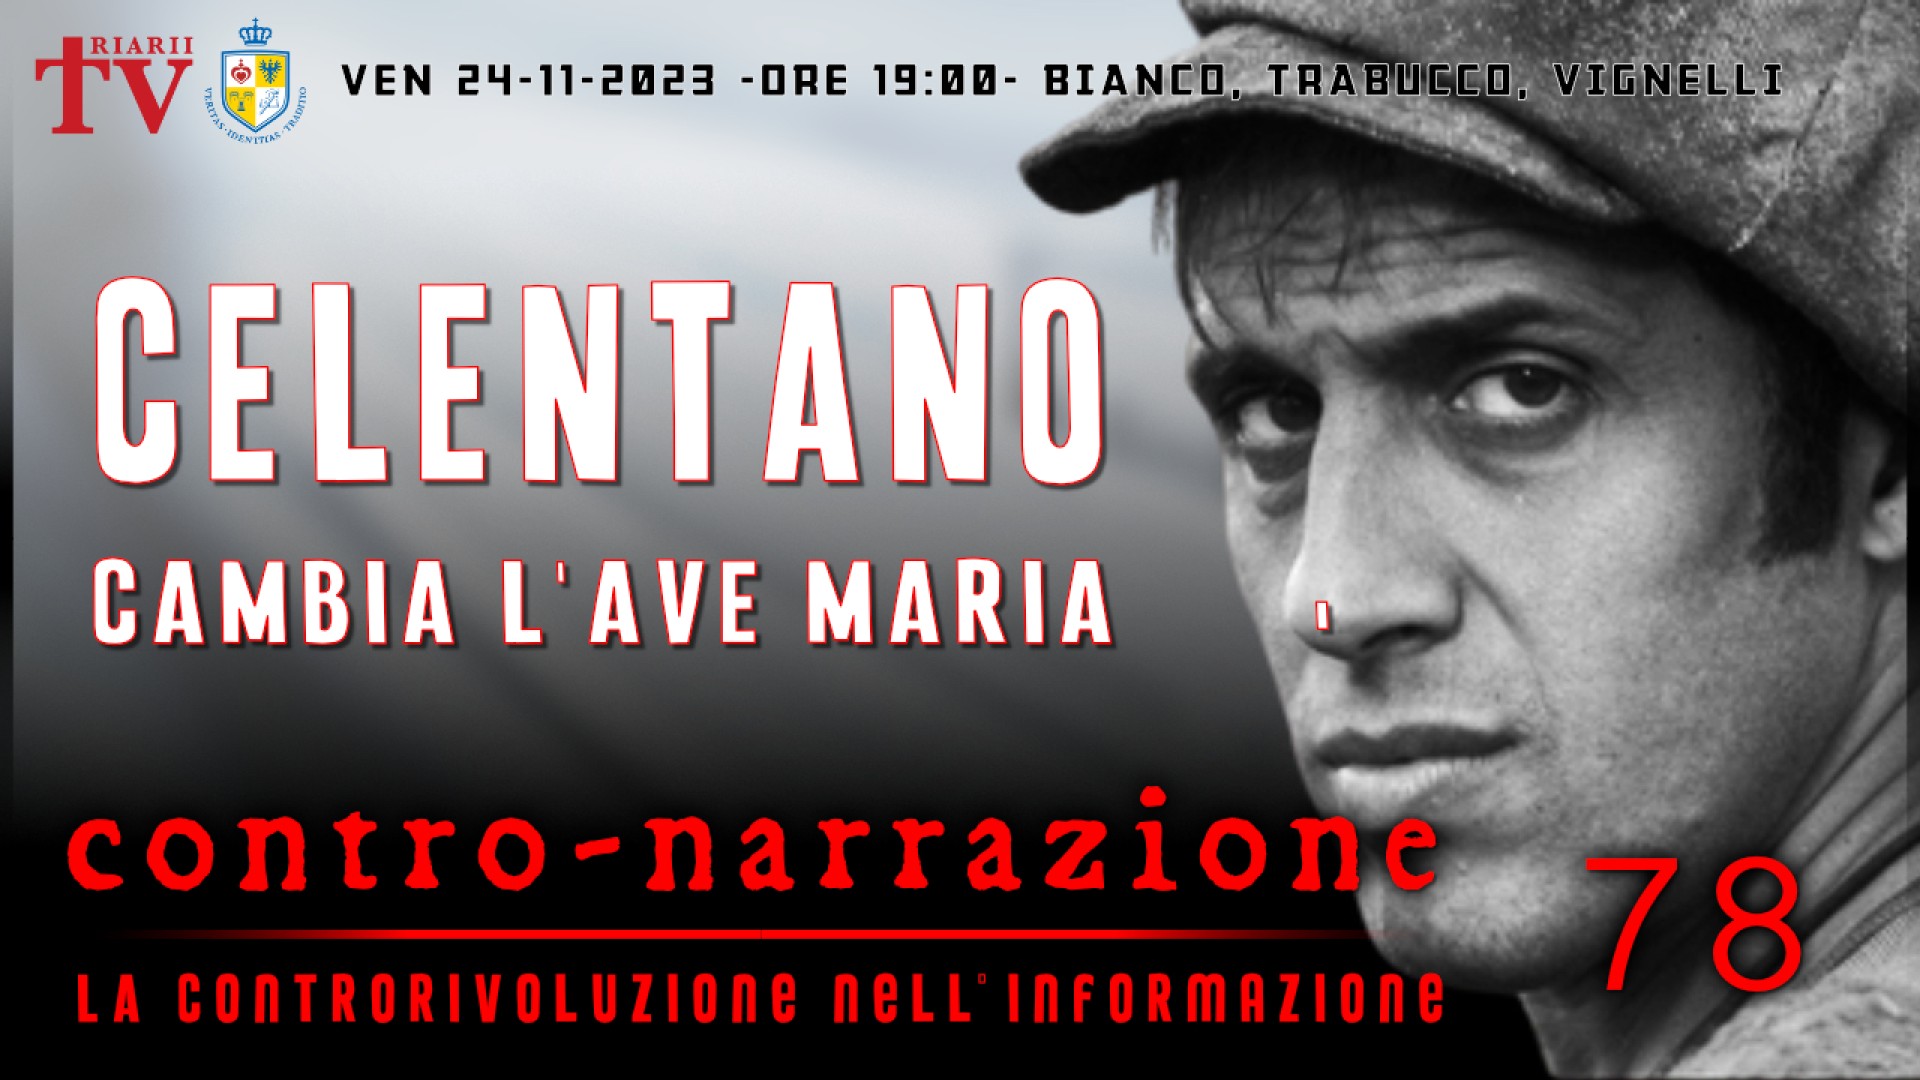 CONTRO-NARRAZIONE NR.78 - VEN 24 NOVEMBRE 2023 - Antonio Bianco, Daniele Trabucco, Guido Vignelli